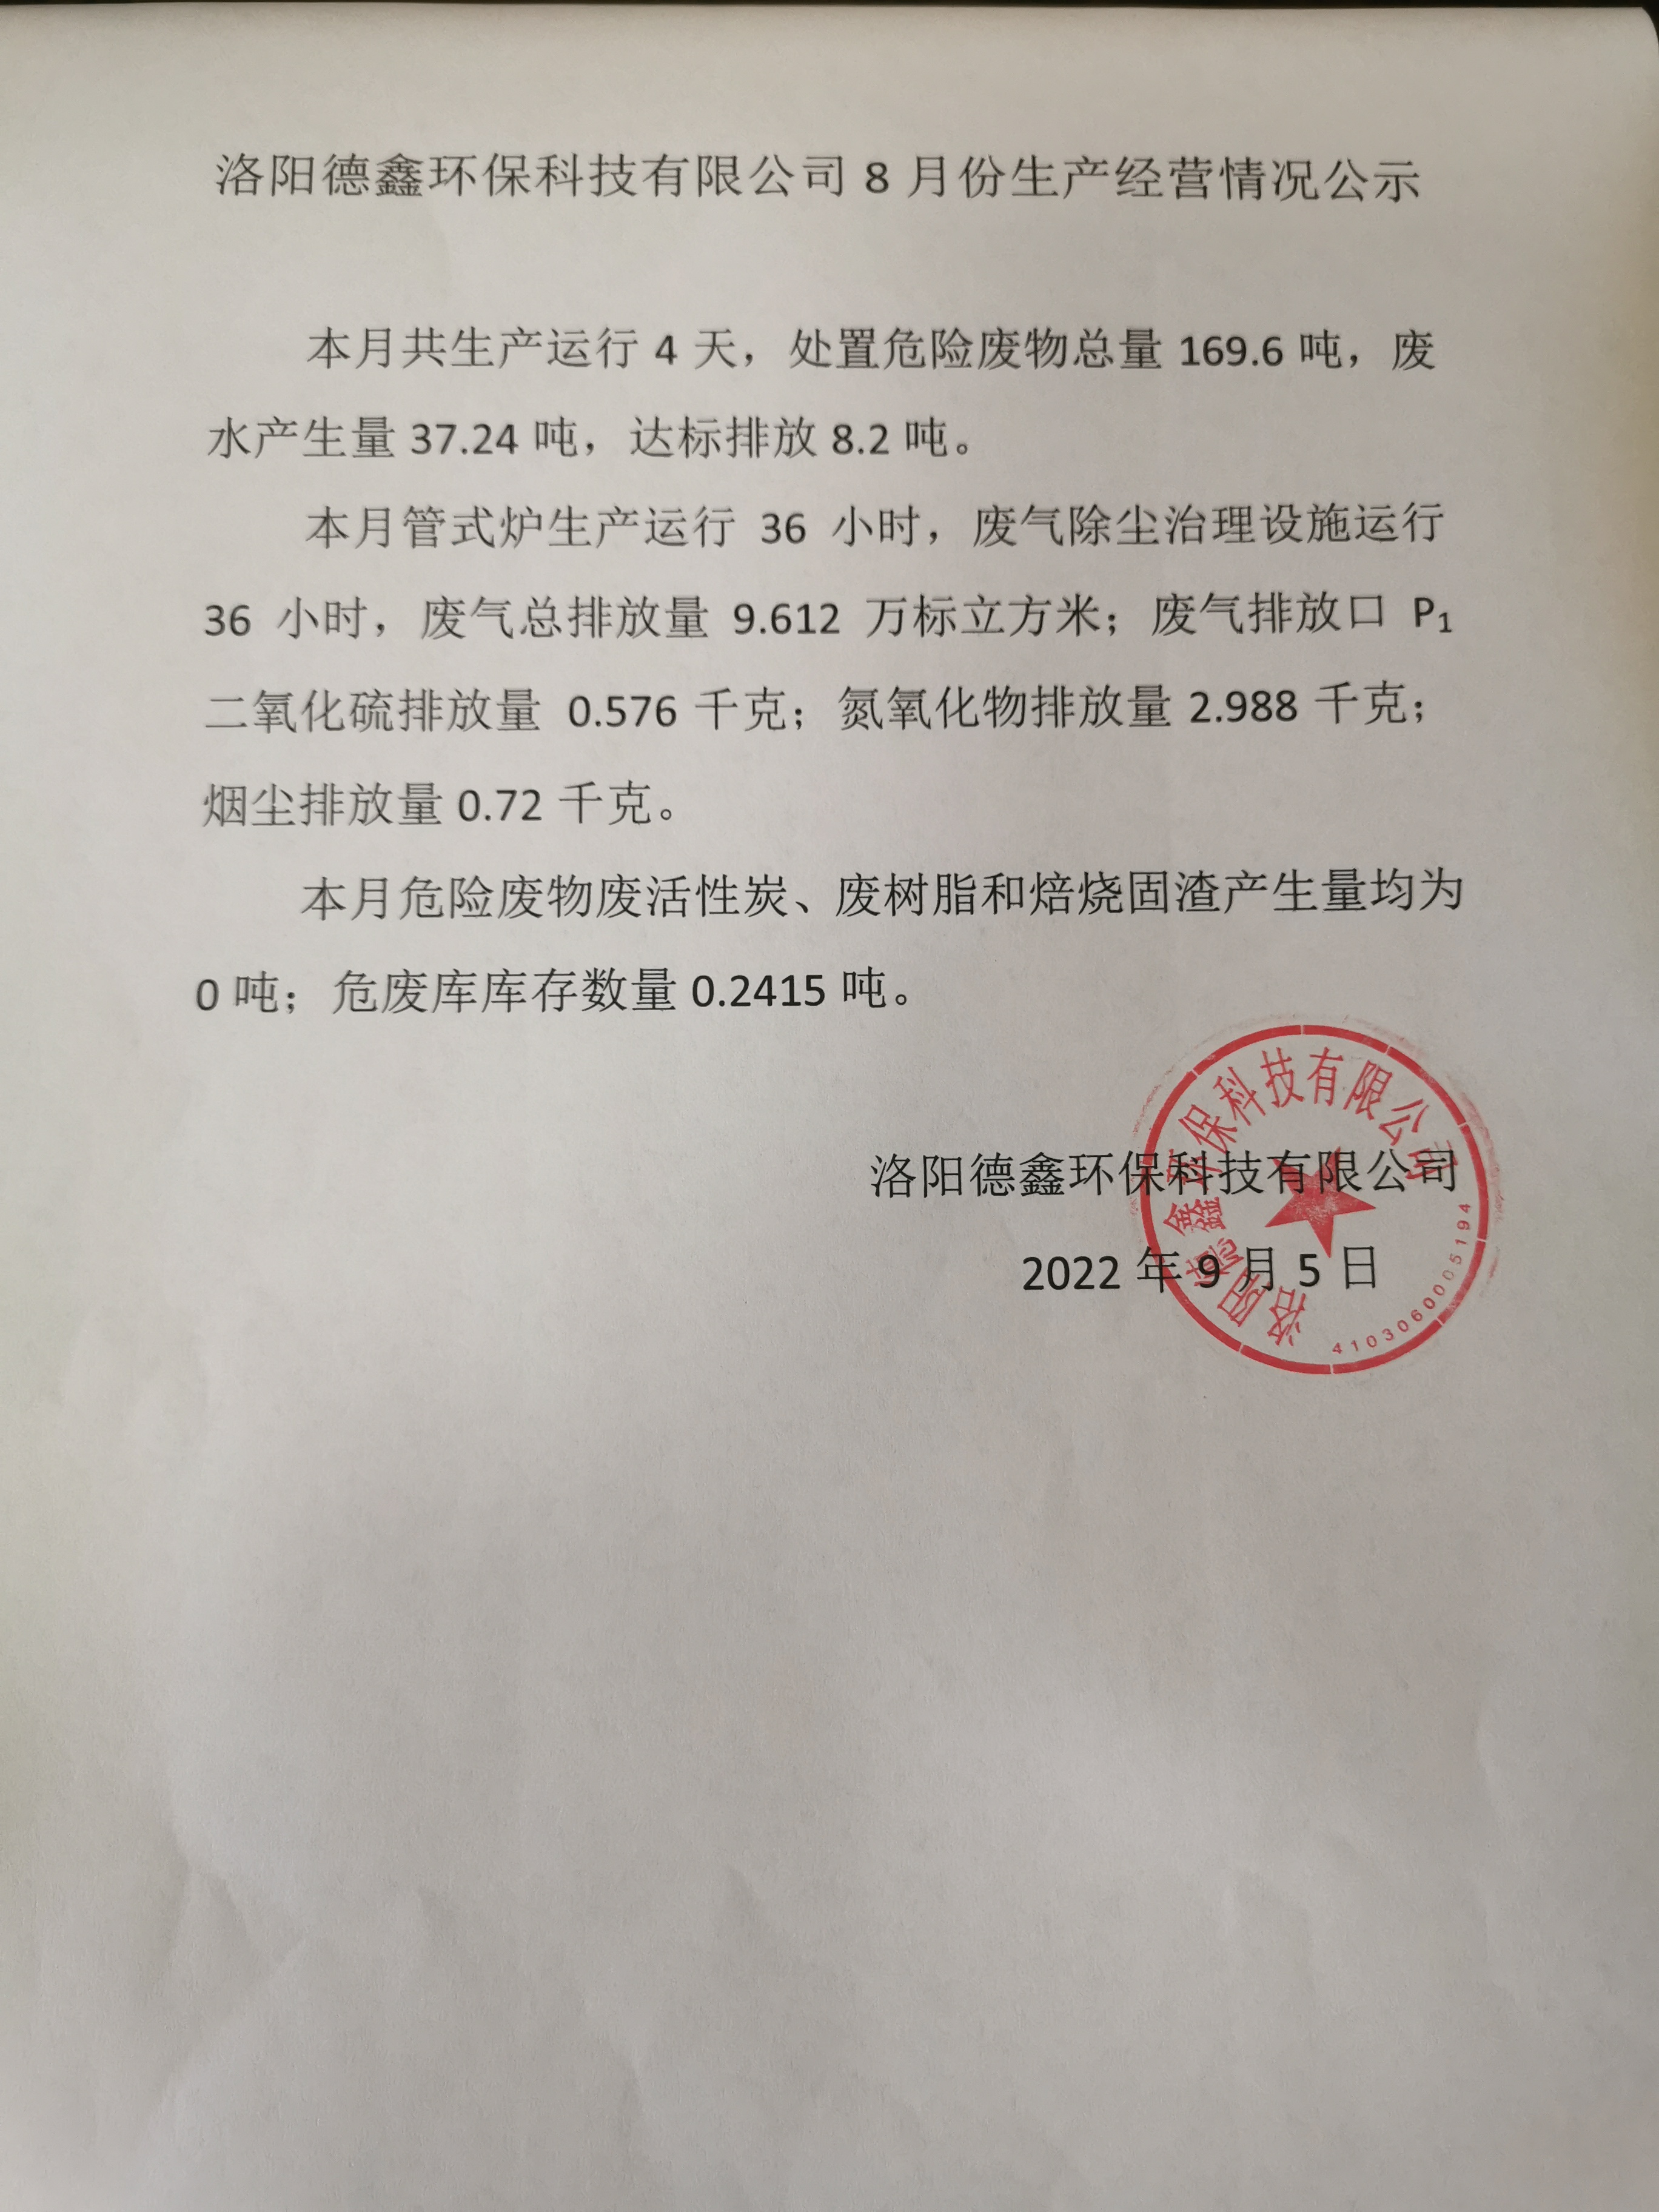 洛阳德鑫环保科技有限公司8月份生产经营情况公示